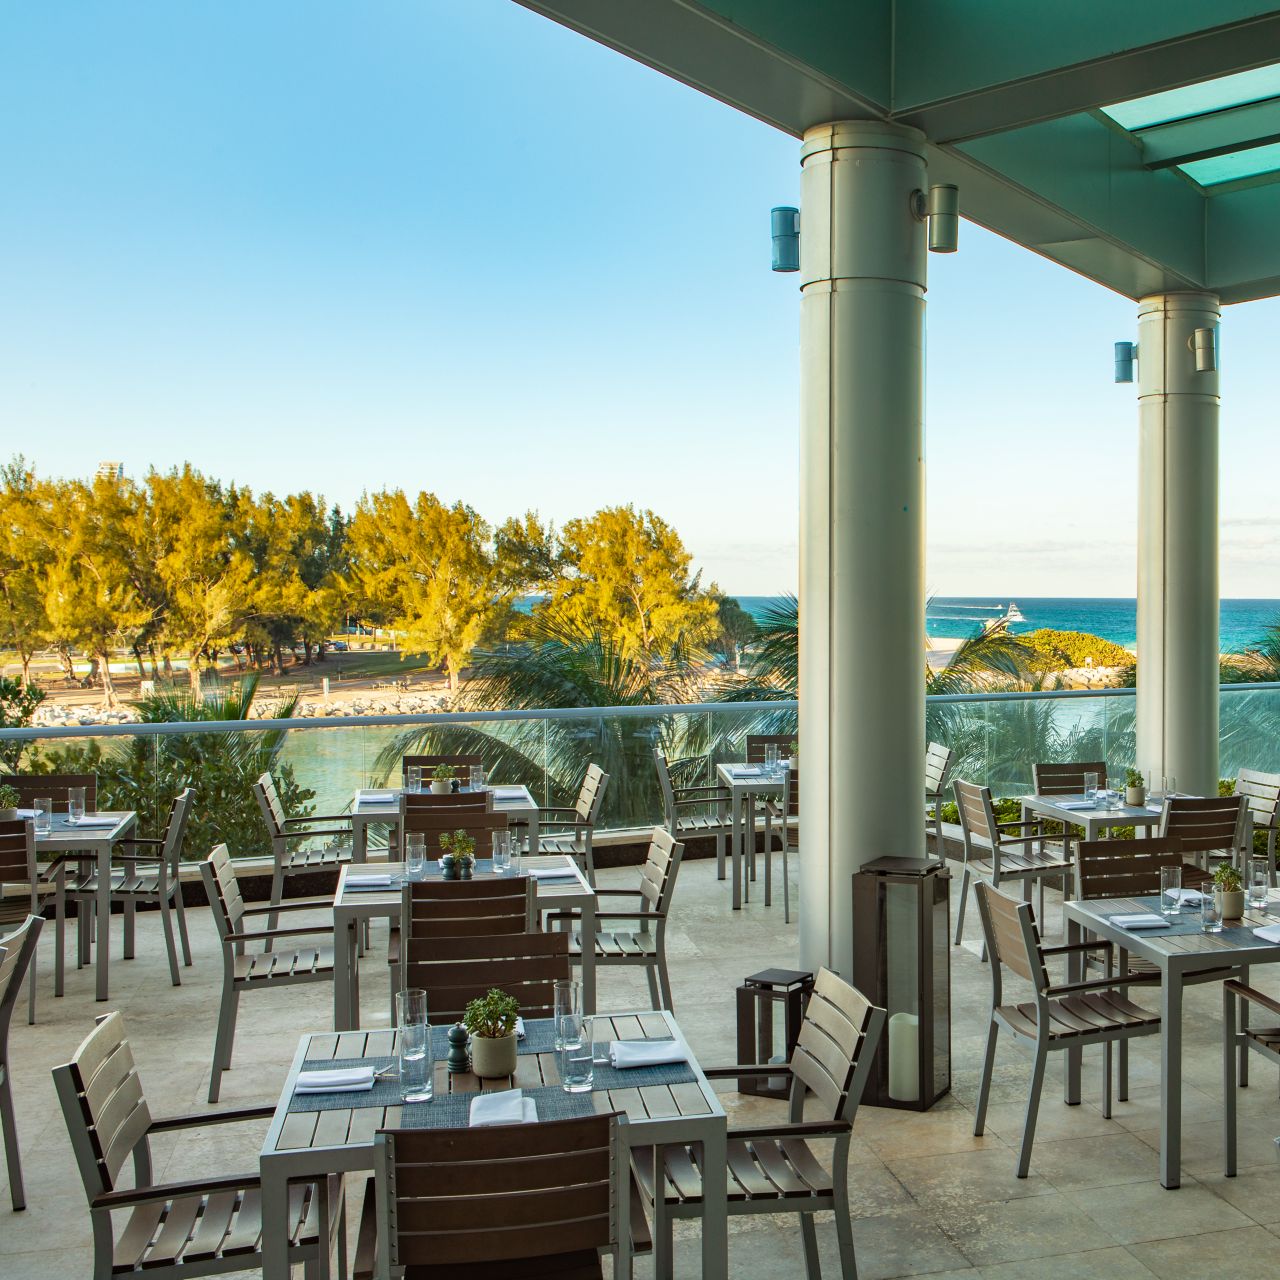 terraza del restaurante al aire libre con vista al mar